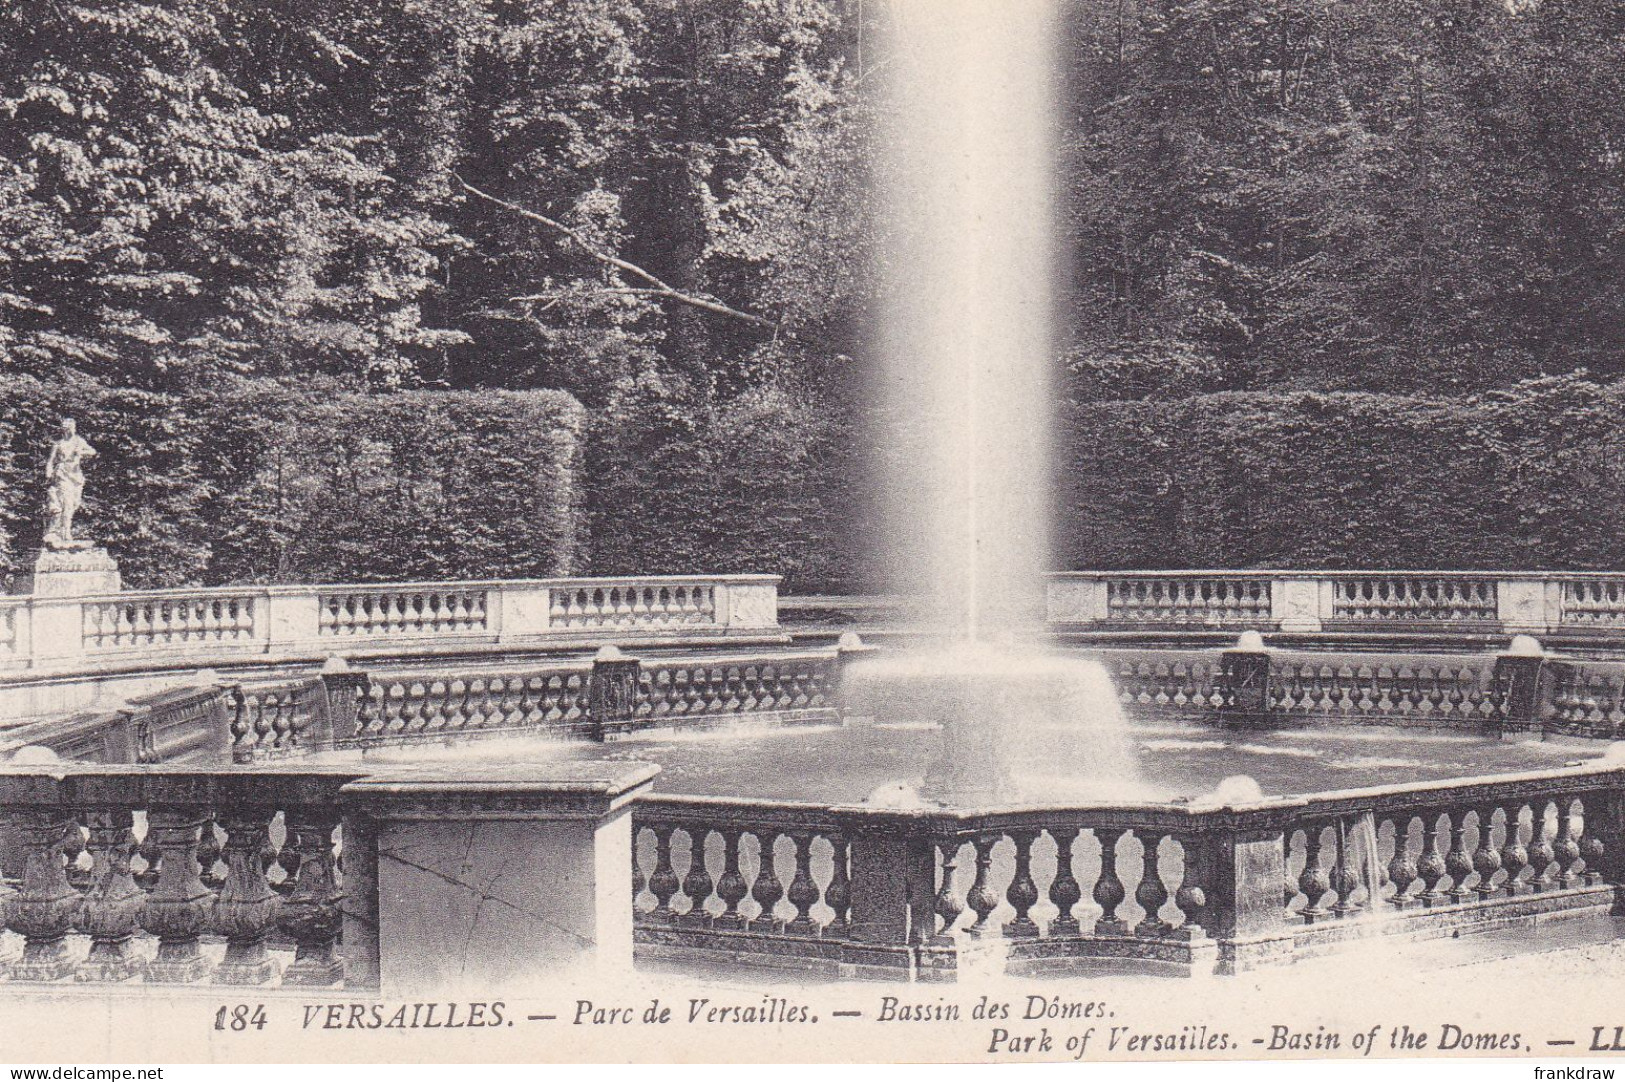 Postcard - Versailles - Parc De Versailles - Bassin Des Domes - Park Of Versailles - Basin Of Domes - Card No. 184 - VG - Unclassified